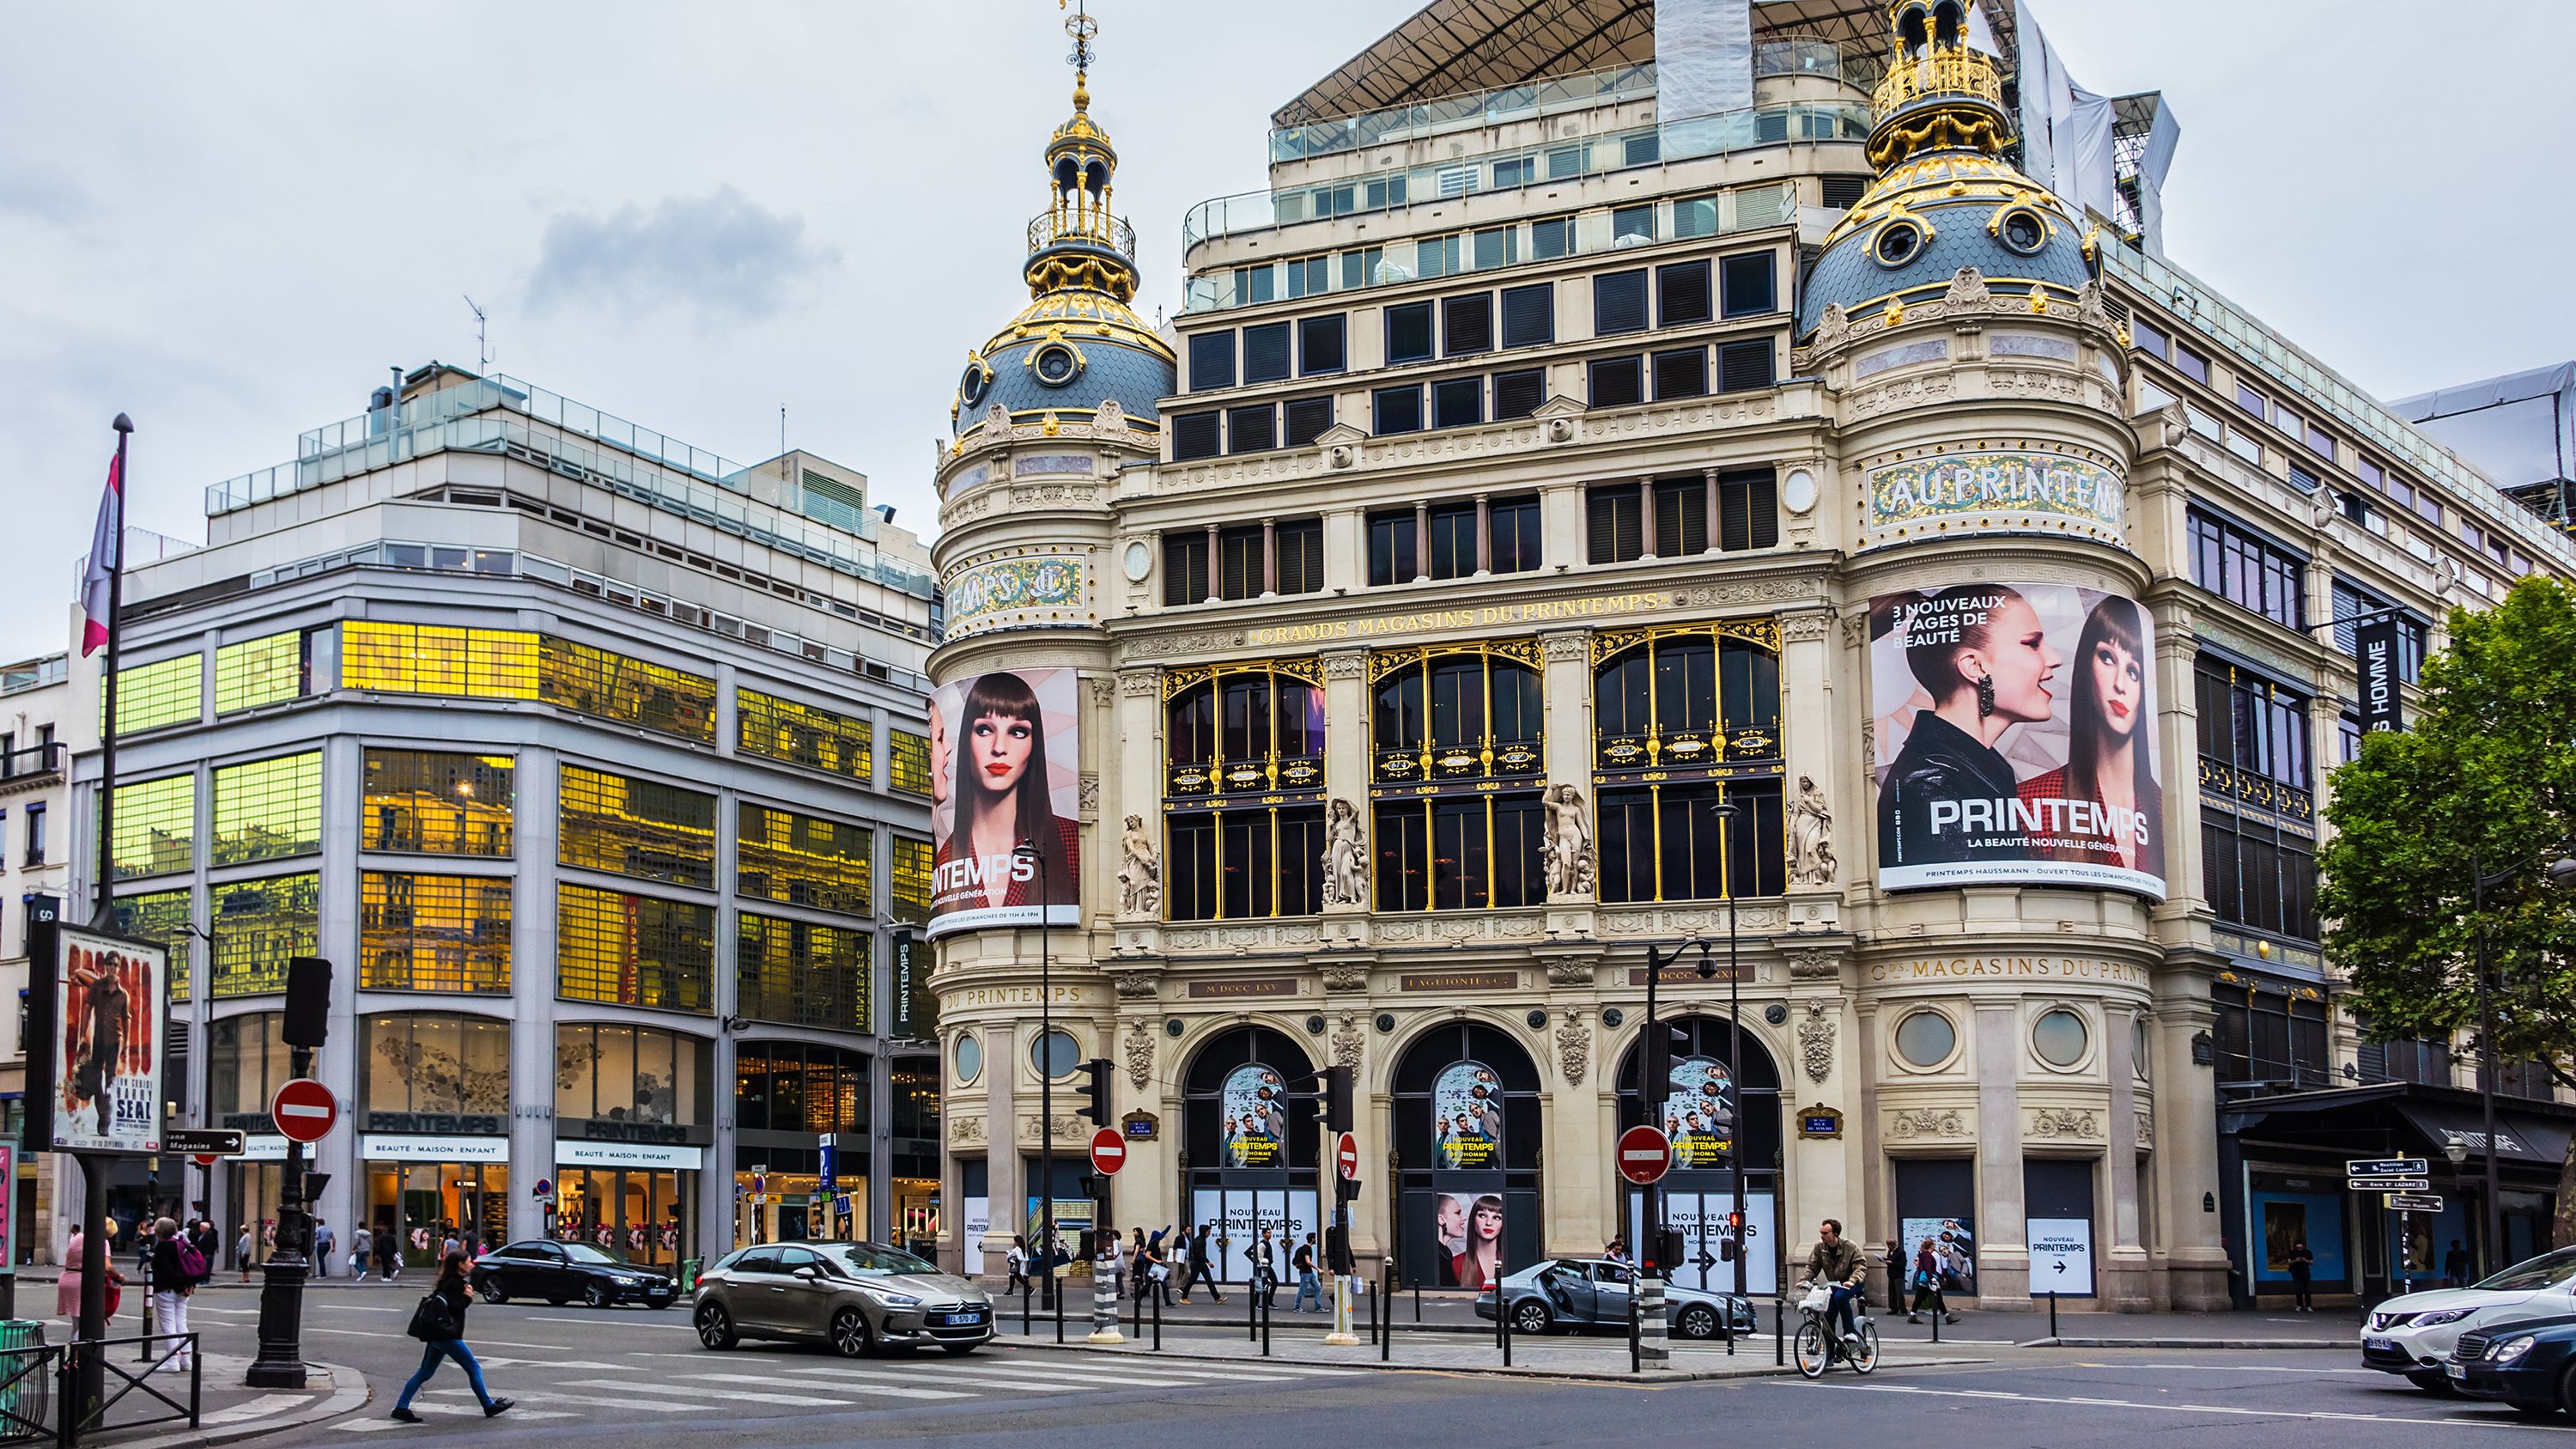 Louis Vuitton Paris Printemps Haussmann Store in Paris, France